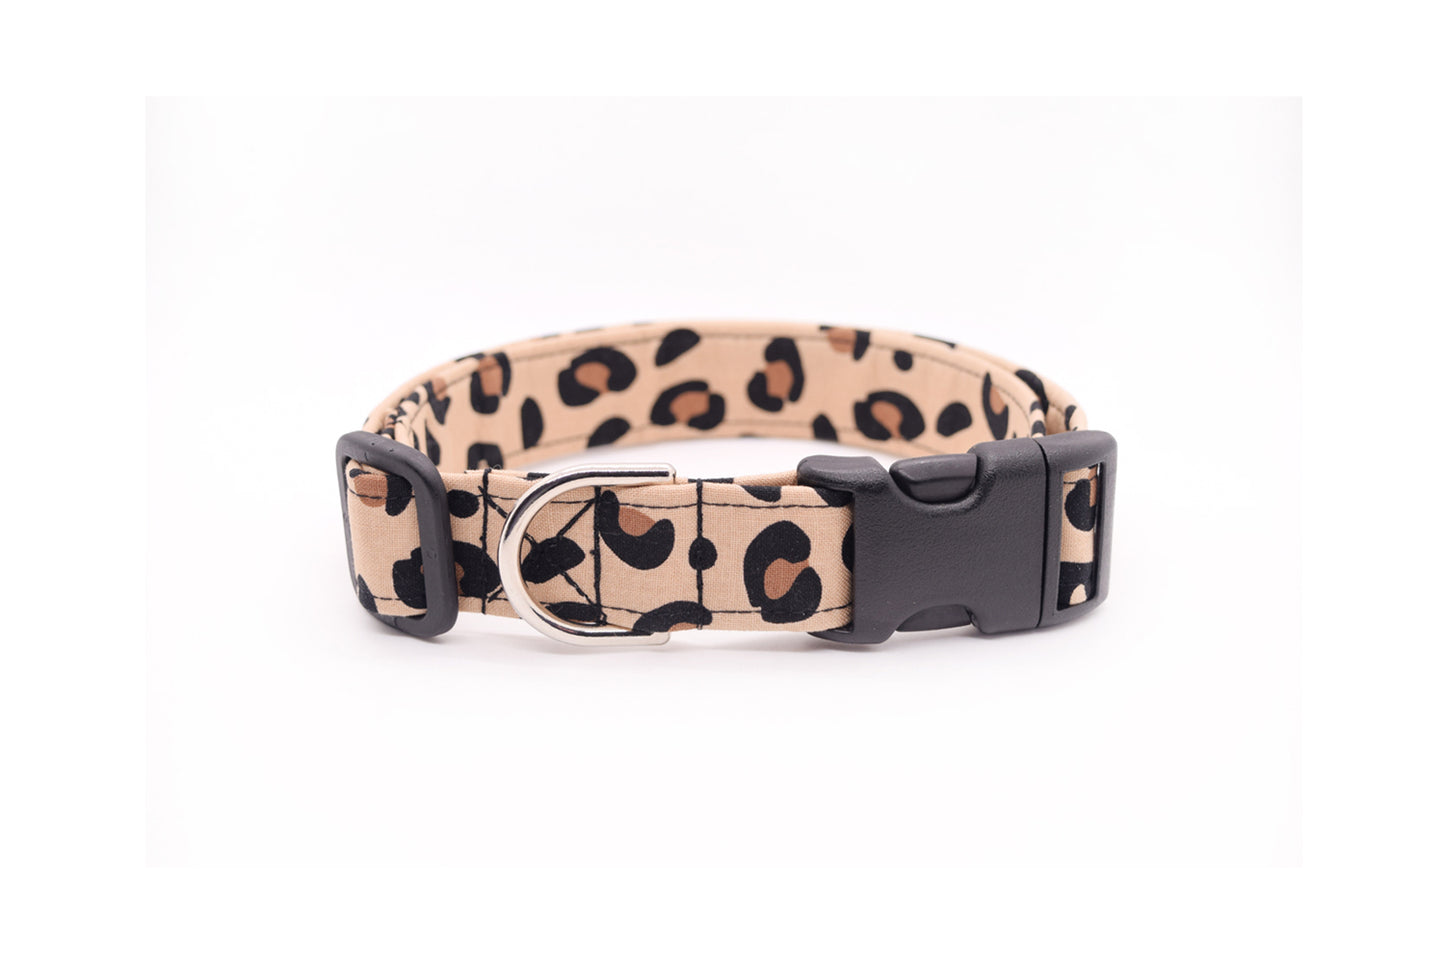 Leopard Print Dog Collar - Handmade by Kira's Pet Shop